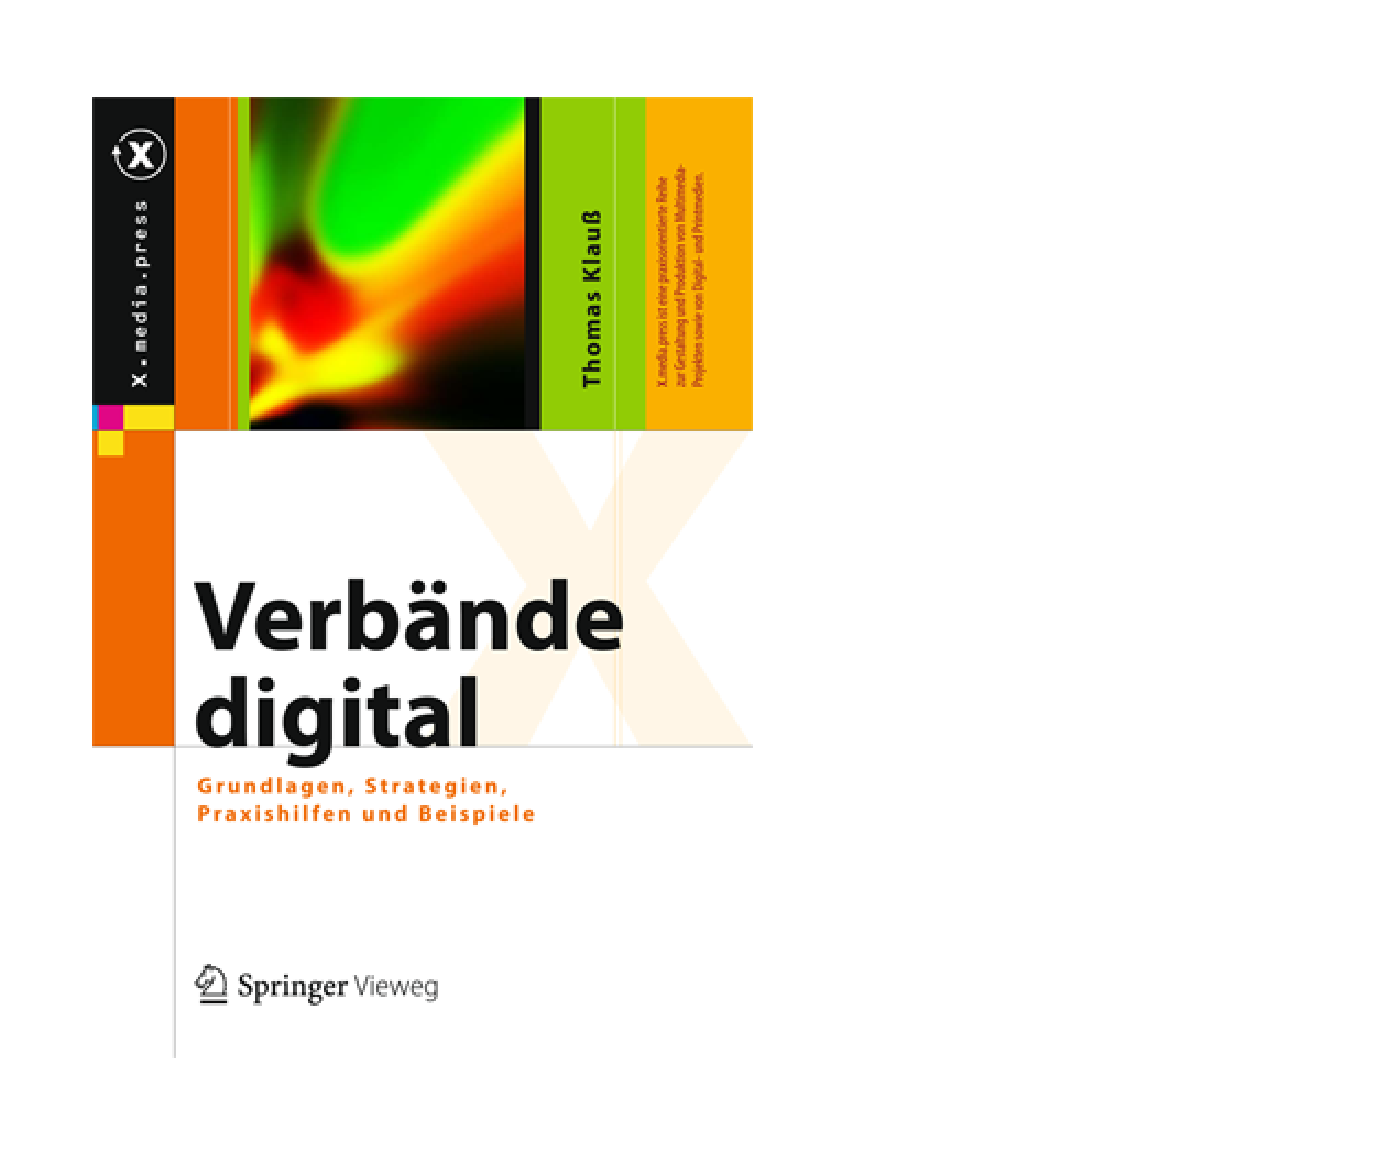 Thomas Klauß: Verbände digital - Grundlagen, Strategien, technologien, Praxis